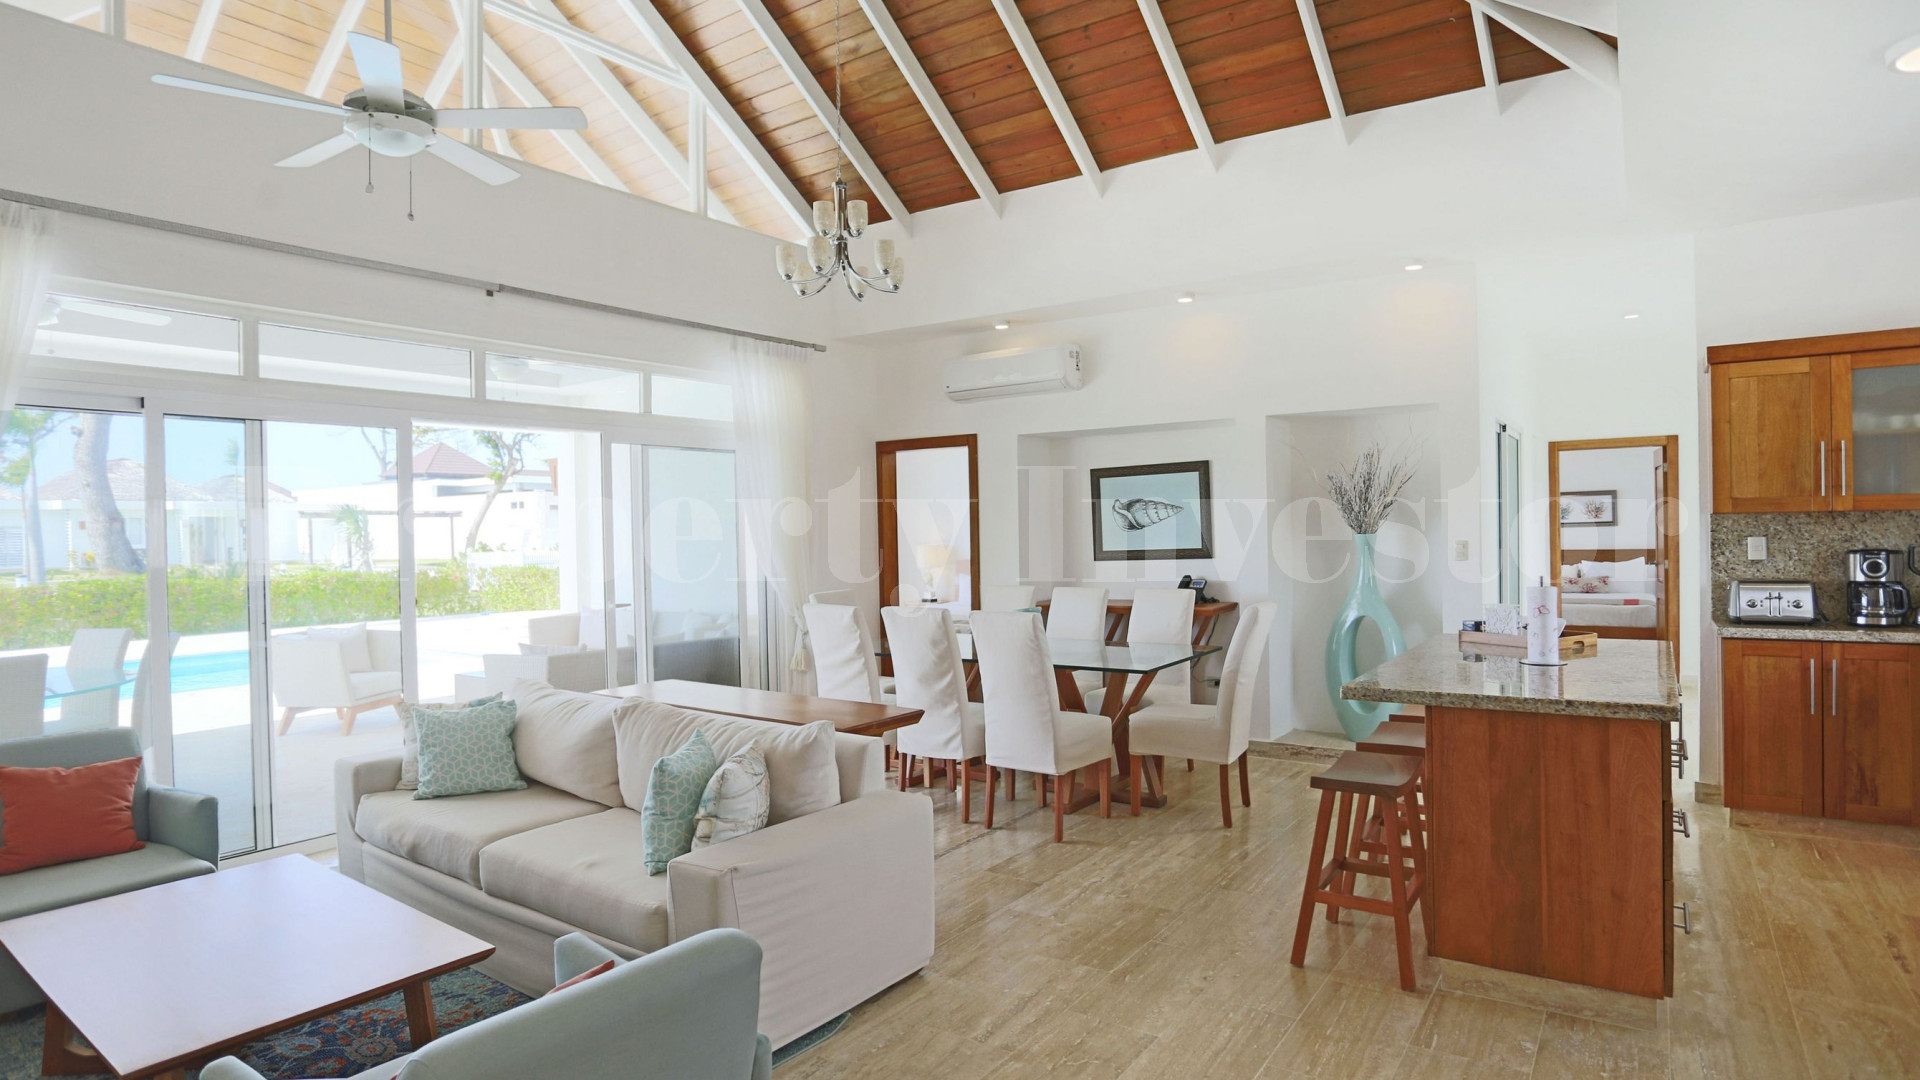 Вилла с 3 спальнями с видом на море в Доминиканской Республике с финансированием на 30 лет (Вилла 17)